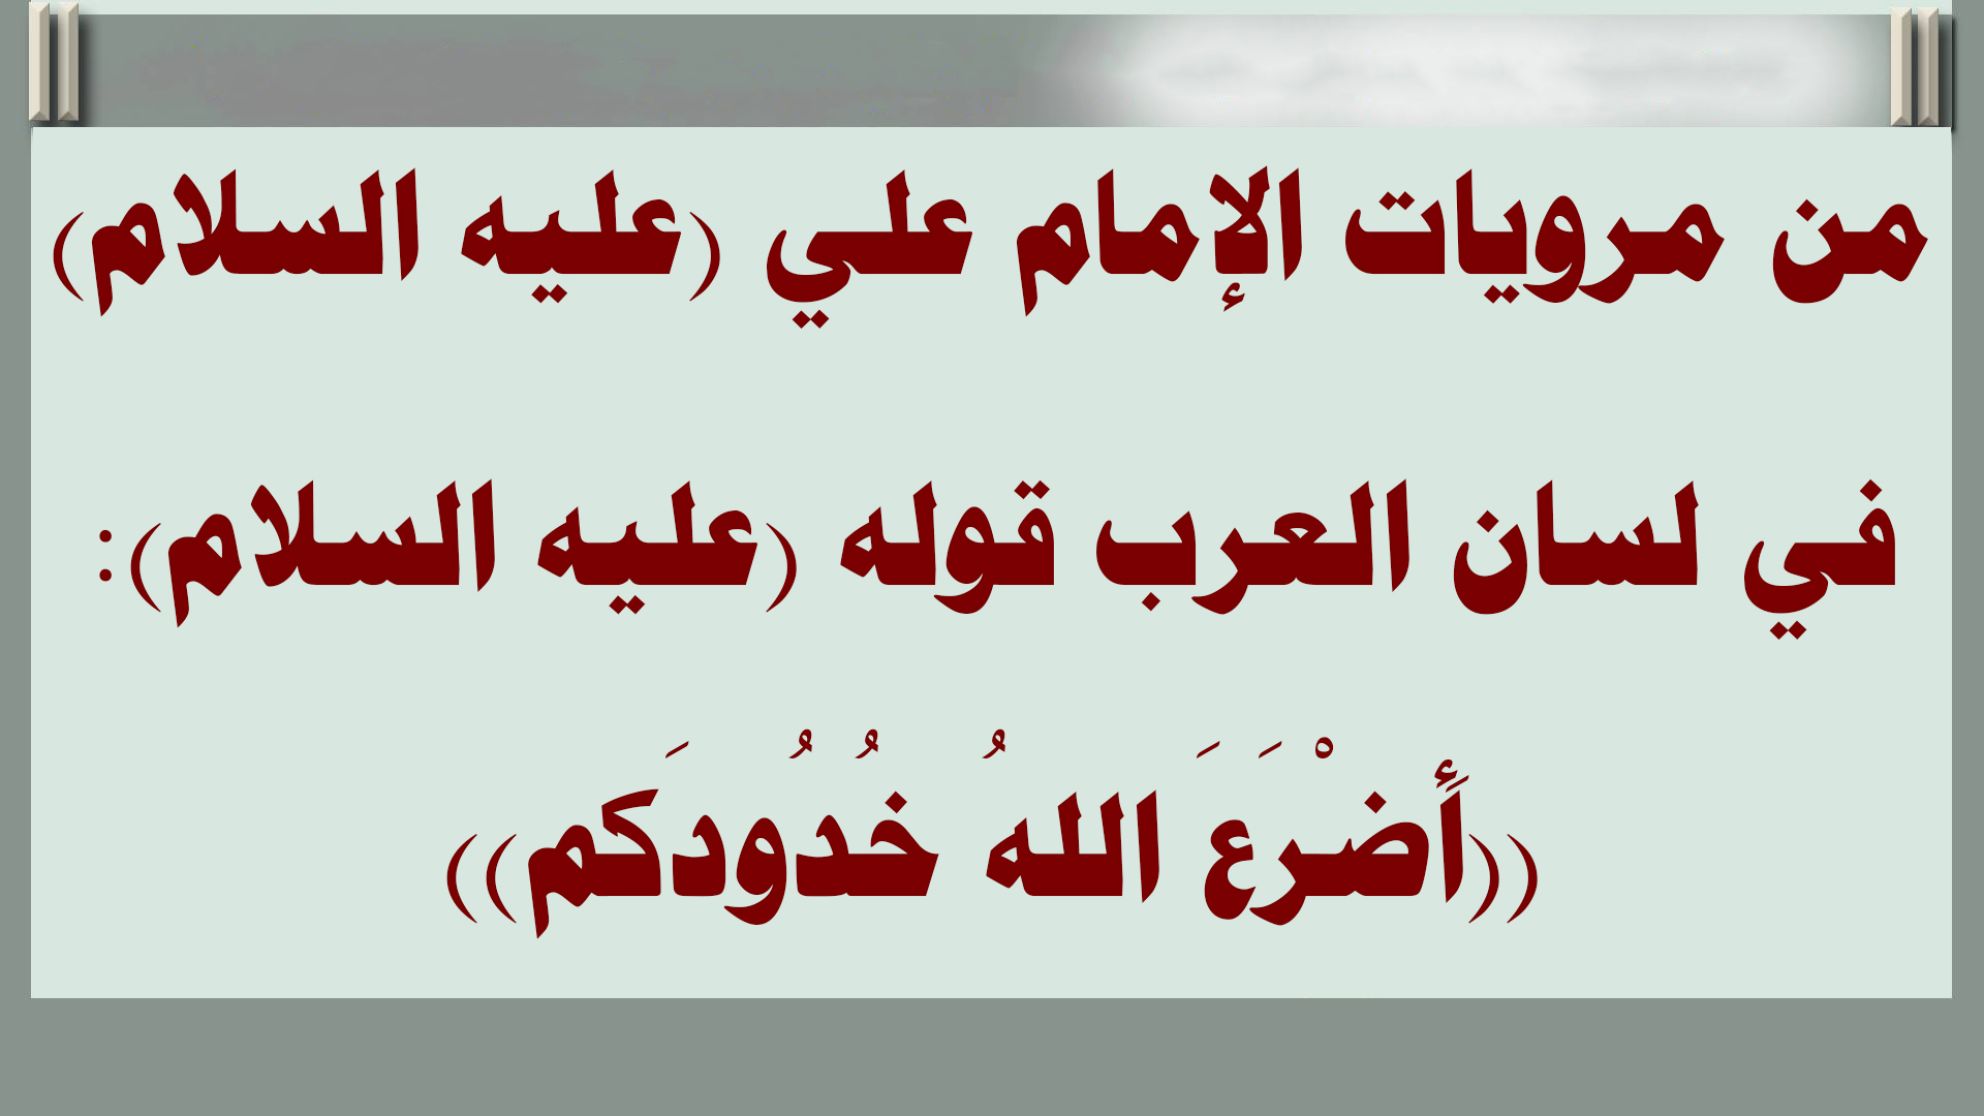 من مرويات الإمام علي (عليه السلام) في لسان العرب قوله (عليه السلام): ((أَضْرَعَ اللهُ خُدُودَكم))